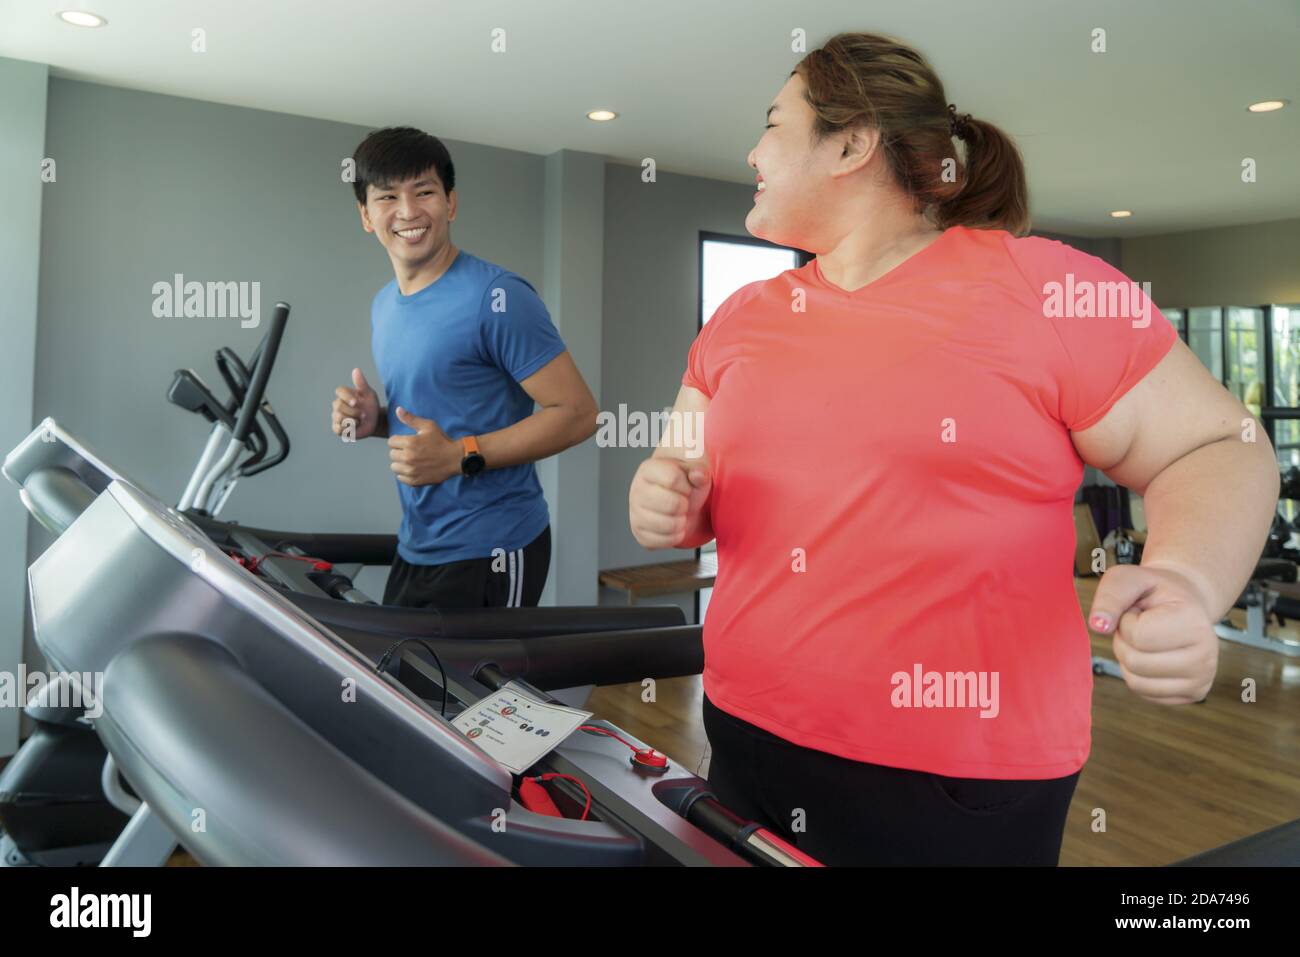 Zwei asiatische Trainer Mann und übergewichtige Frau Training Ausbildung auf dem Laufband im Fitnessstudio, Trainer thump bis zu ihr für gutes Ergebnis während des Trainings. Dicke Frauen Stockfoto